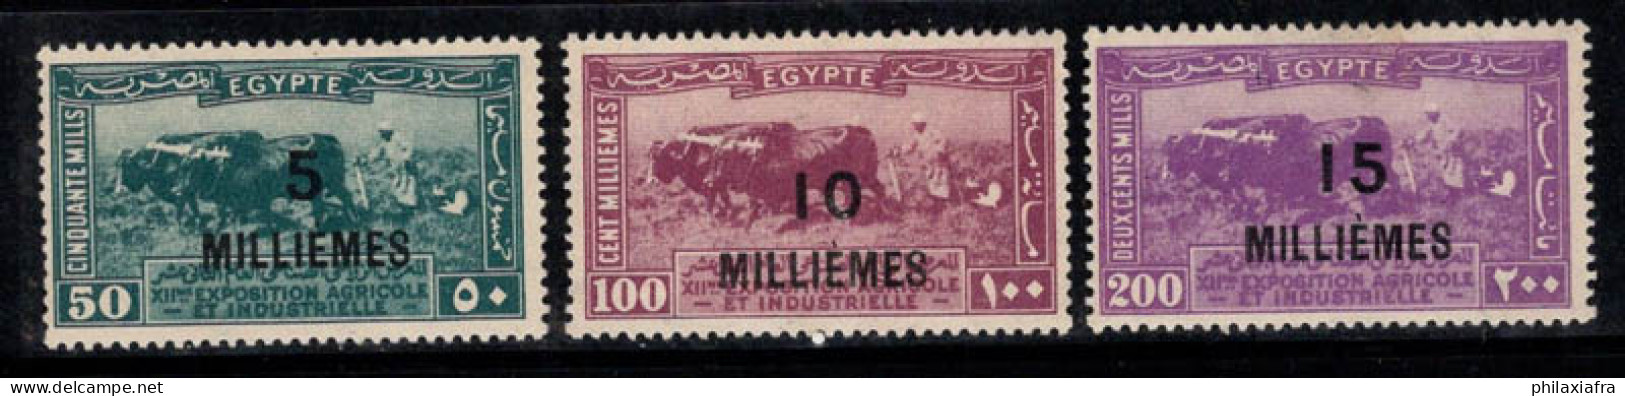 Égypte 1926 Mi. 105-107 Neuf * MH 60% Surimprimé MILLIÈMES - Nuevos